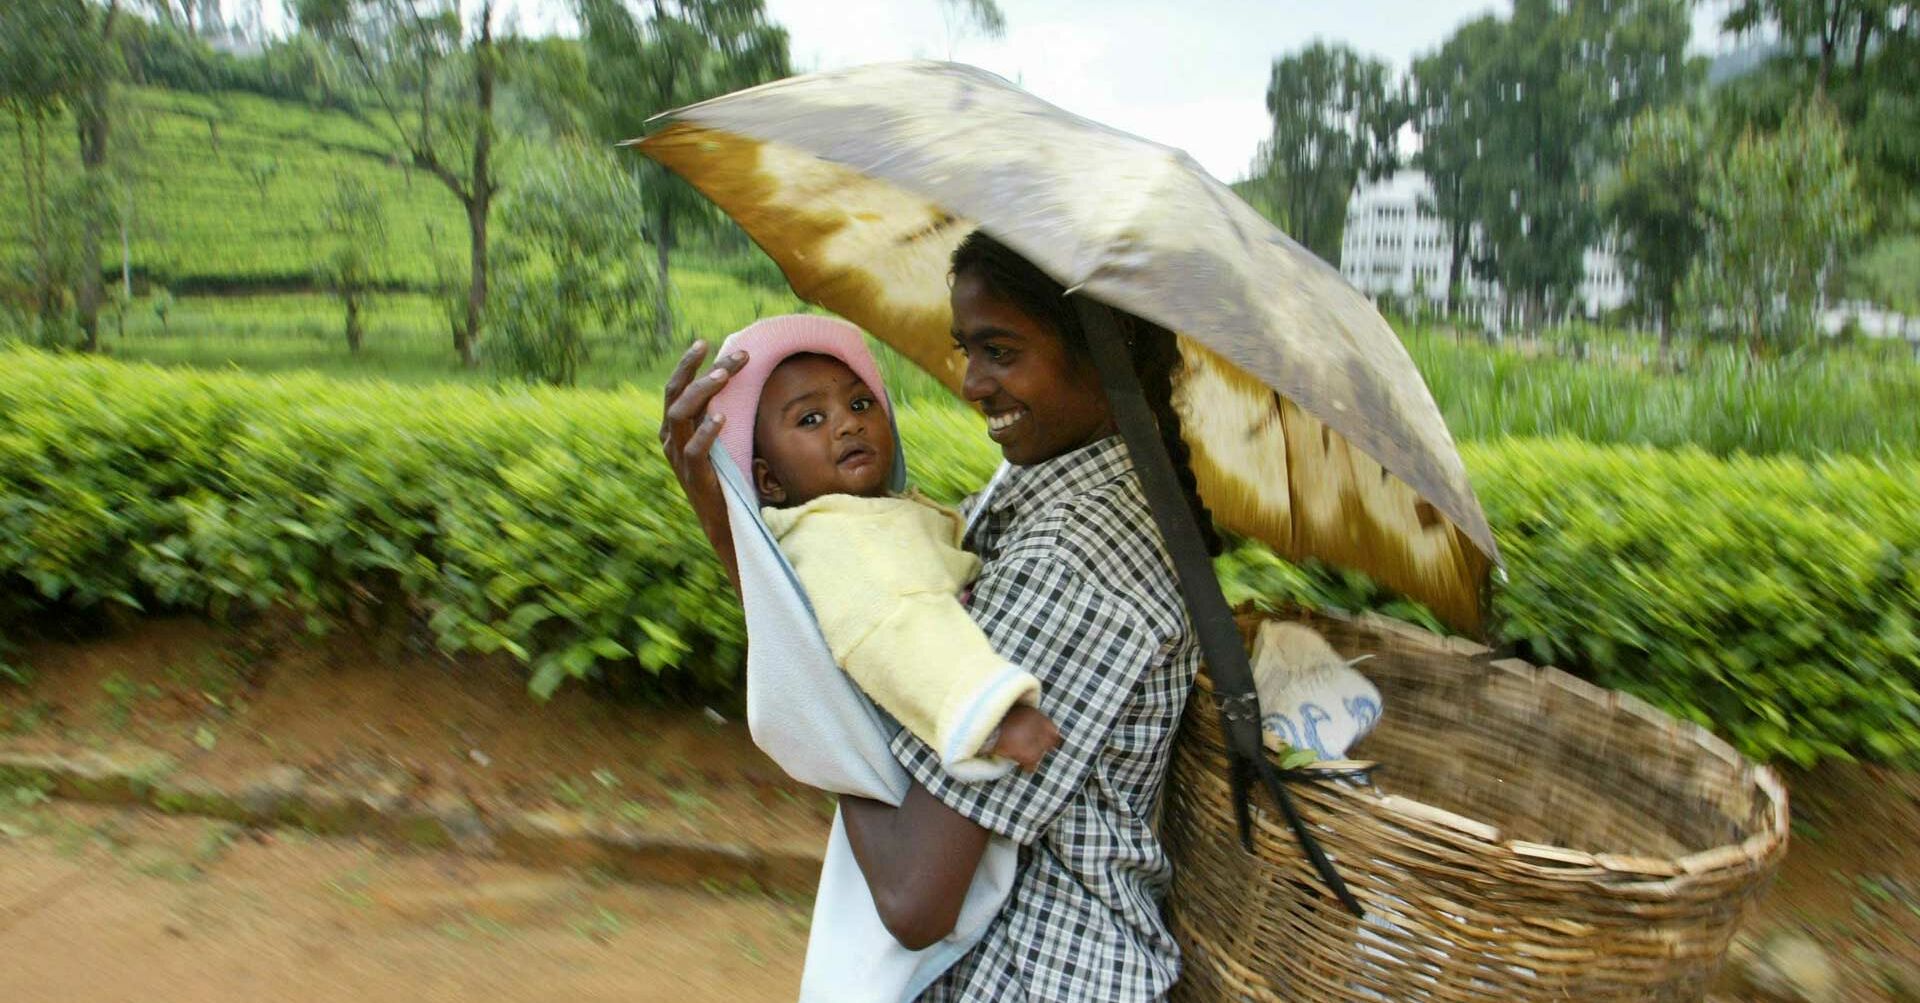 Mädchen mit kleinen Kind auf dem Arm unter Regenschirm, Staatenlose RF140040-1920x1080.jpg